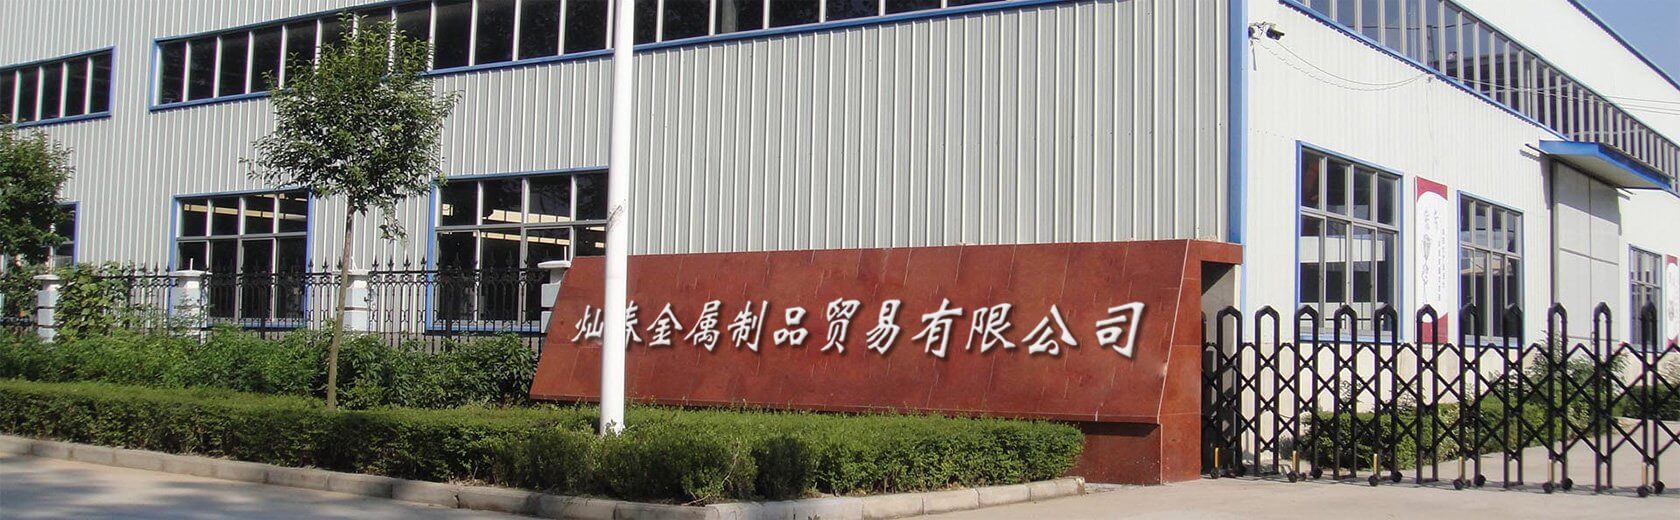 Shijiazhuang CanChun Metal Products Trade Co., Ltd